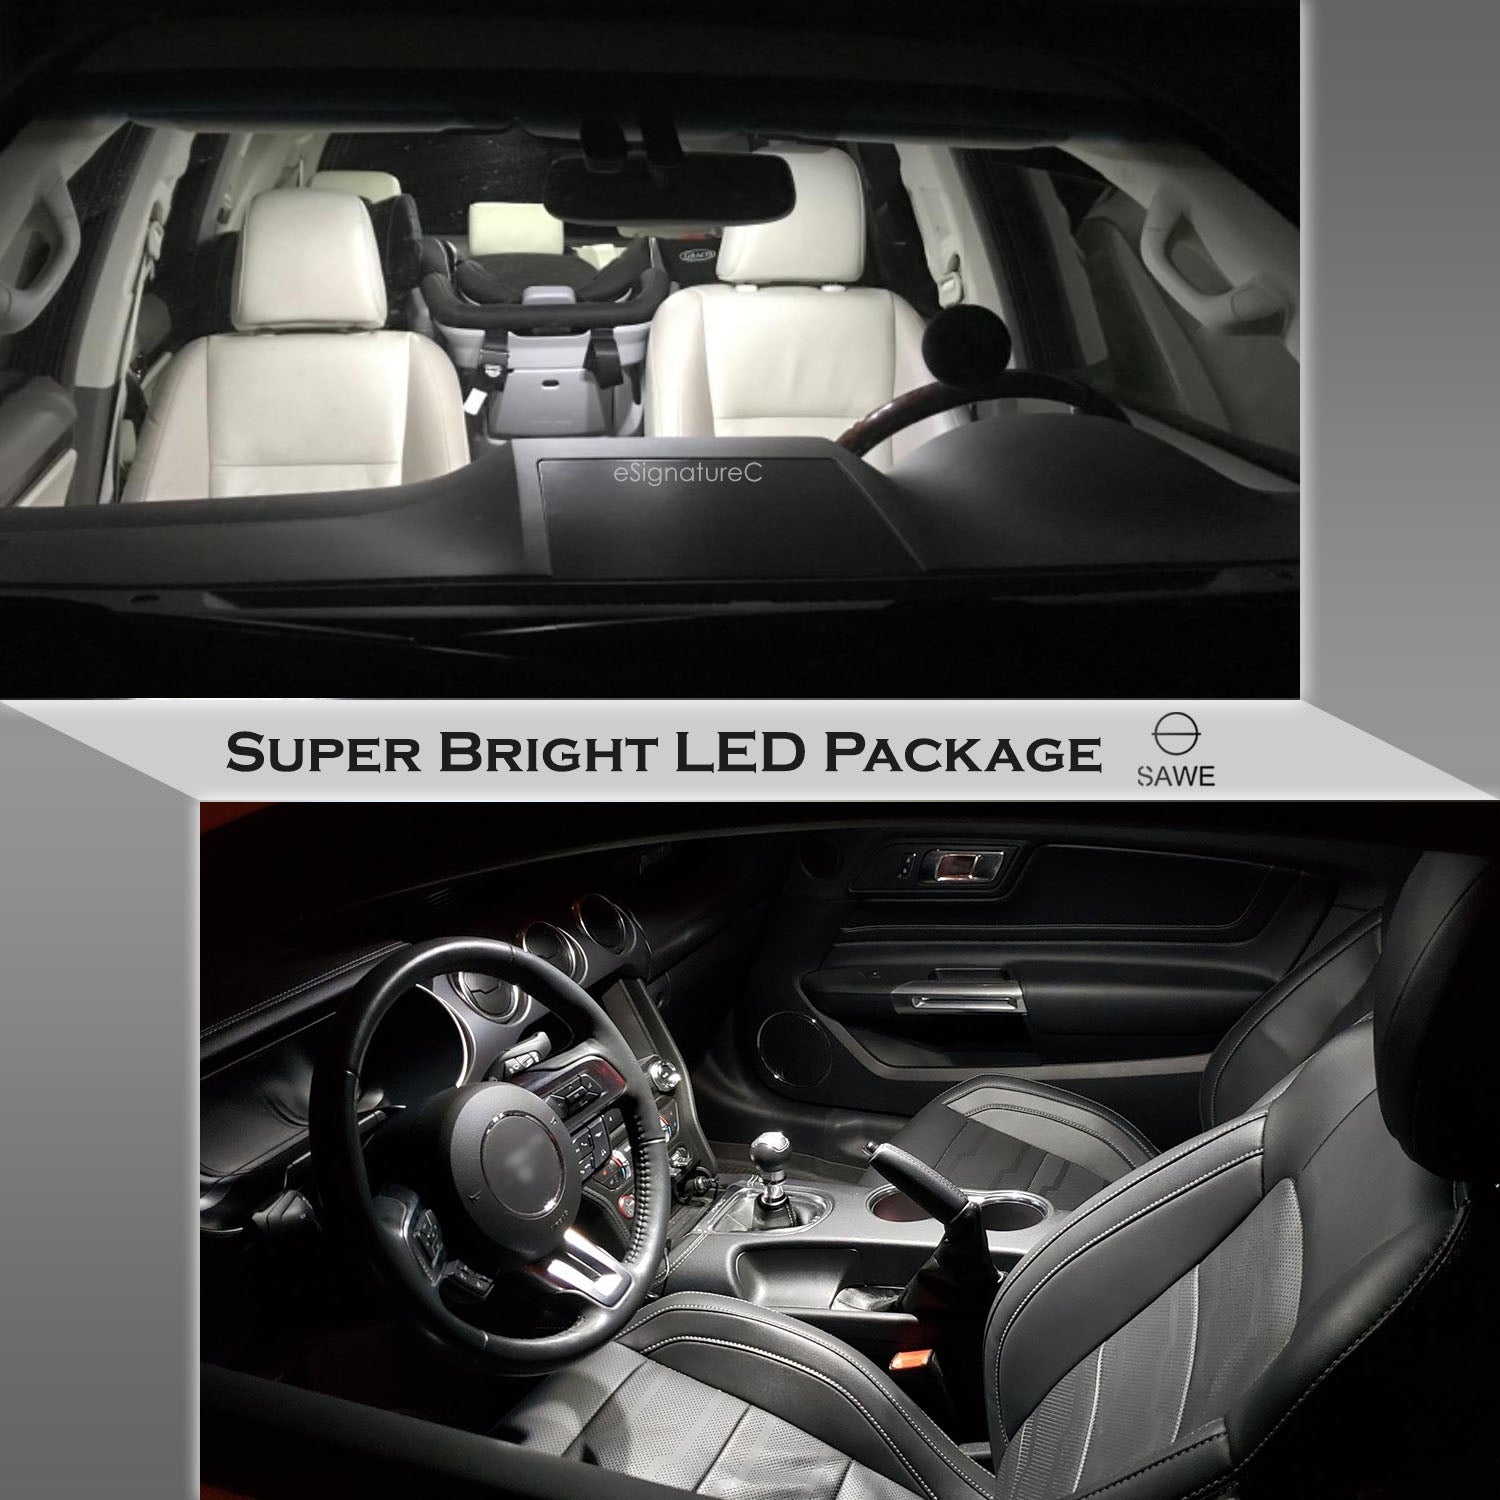 For Ford Explorer Interior LED Lights - Dome & Map Light Bulbs Package Kit for 2006 - 2010 - White